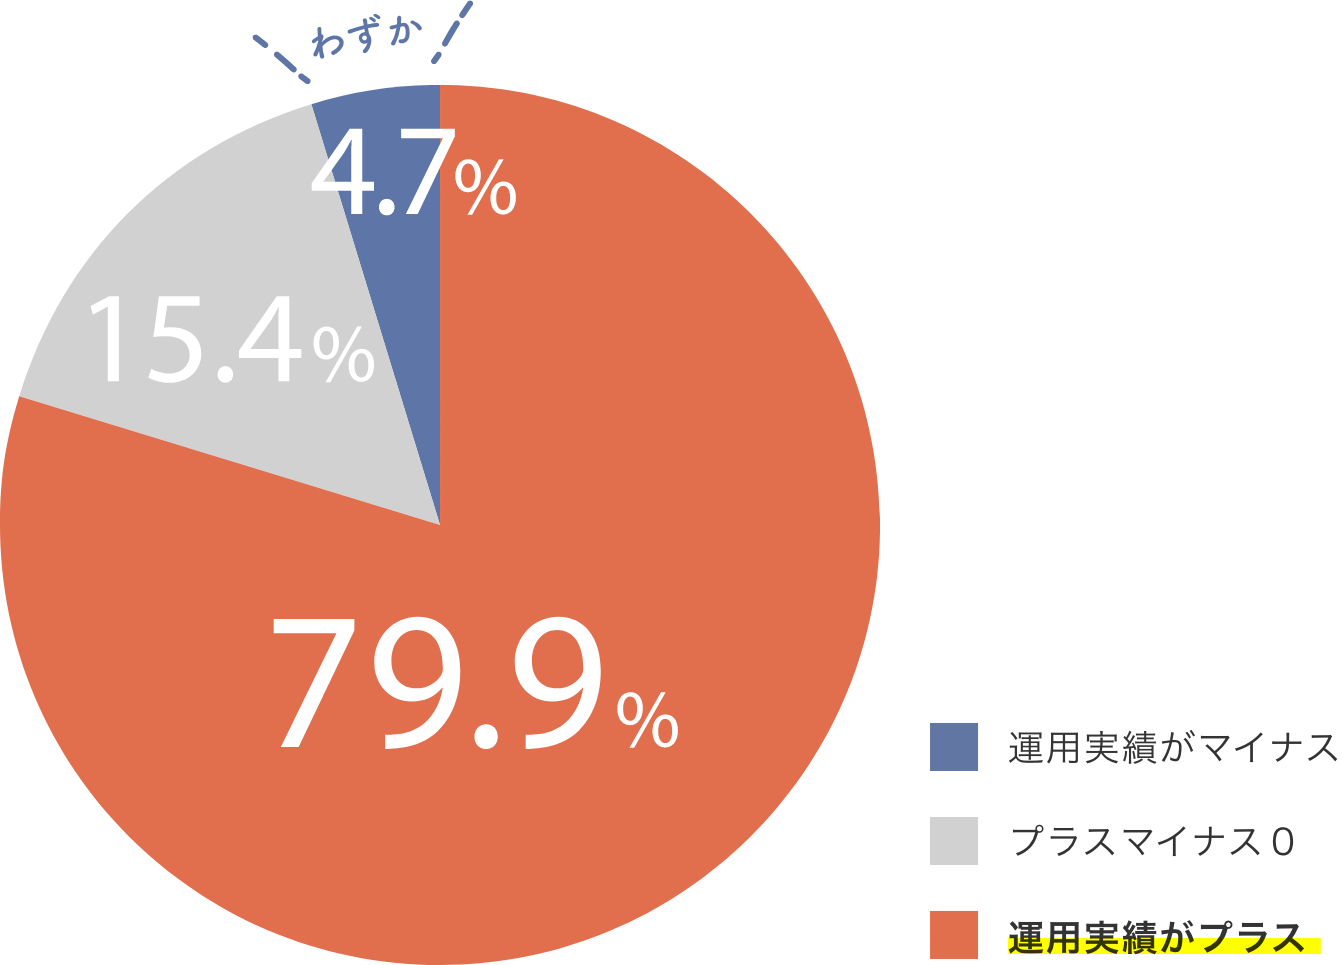 「運用実績がプラス」74.1%／「プラスマイナスゼロ」16.5%／「運用実績がマイナス」9.4%